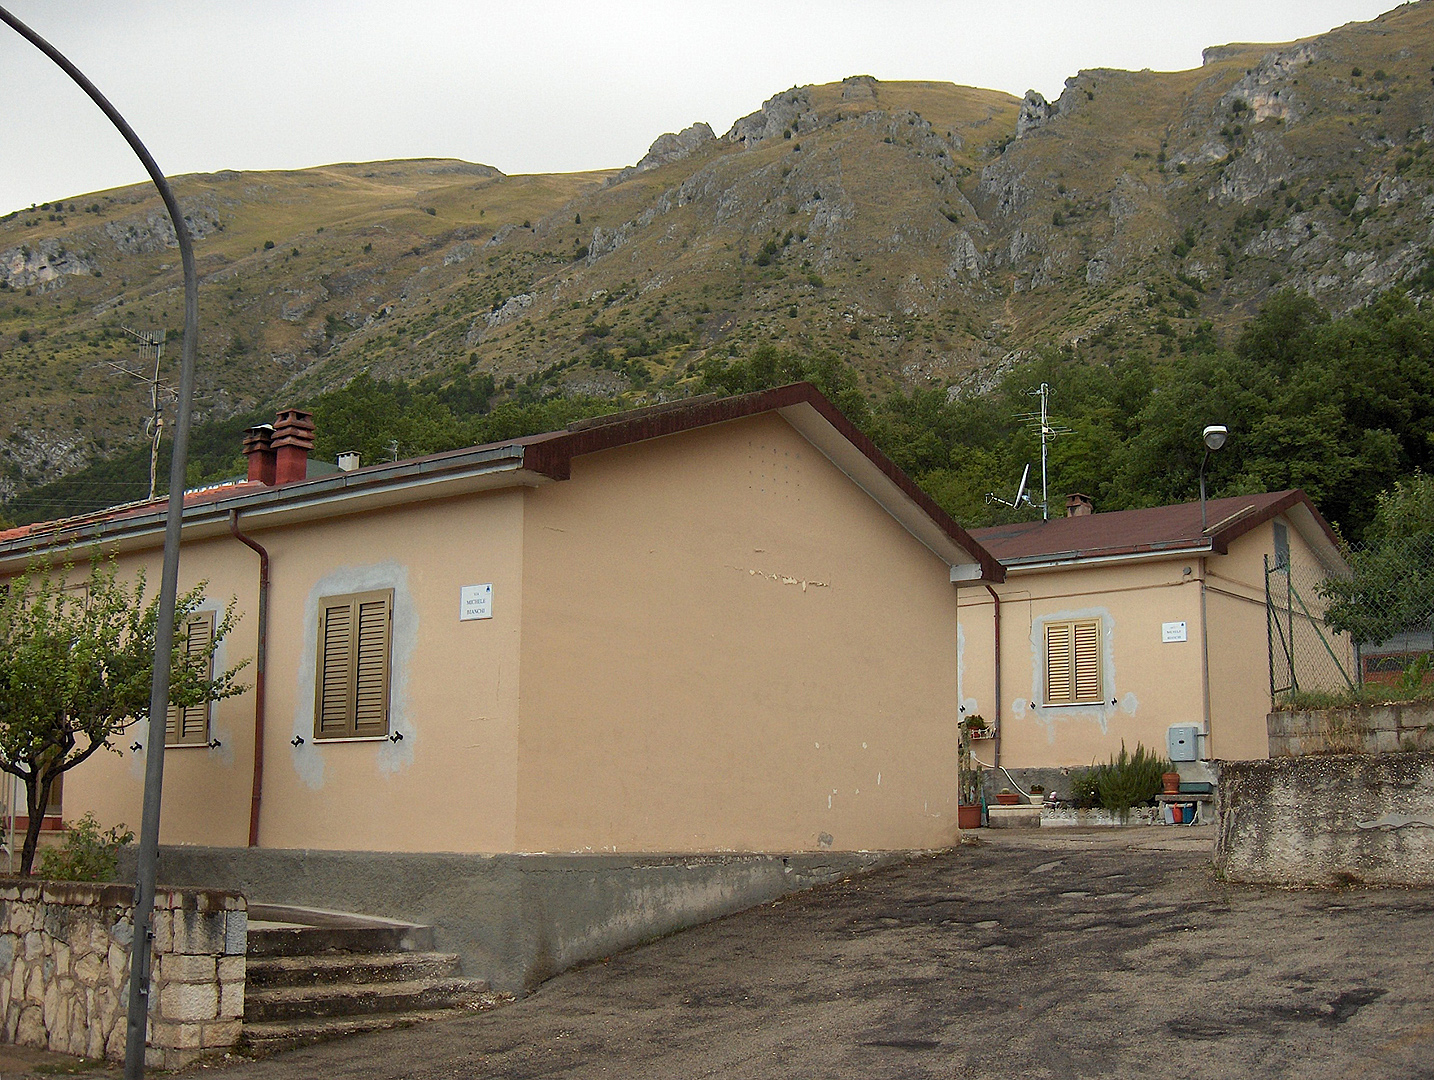 Lama dei Peligni (Abruzzen, Itali), Lama dei Peligni (Abruzzo, Italy)